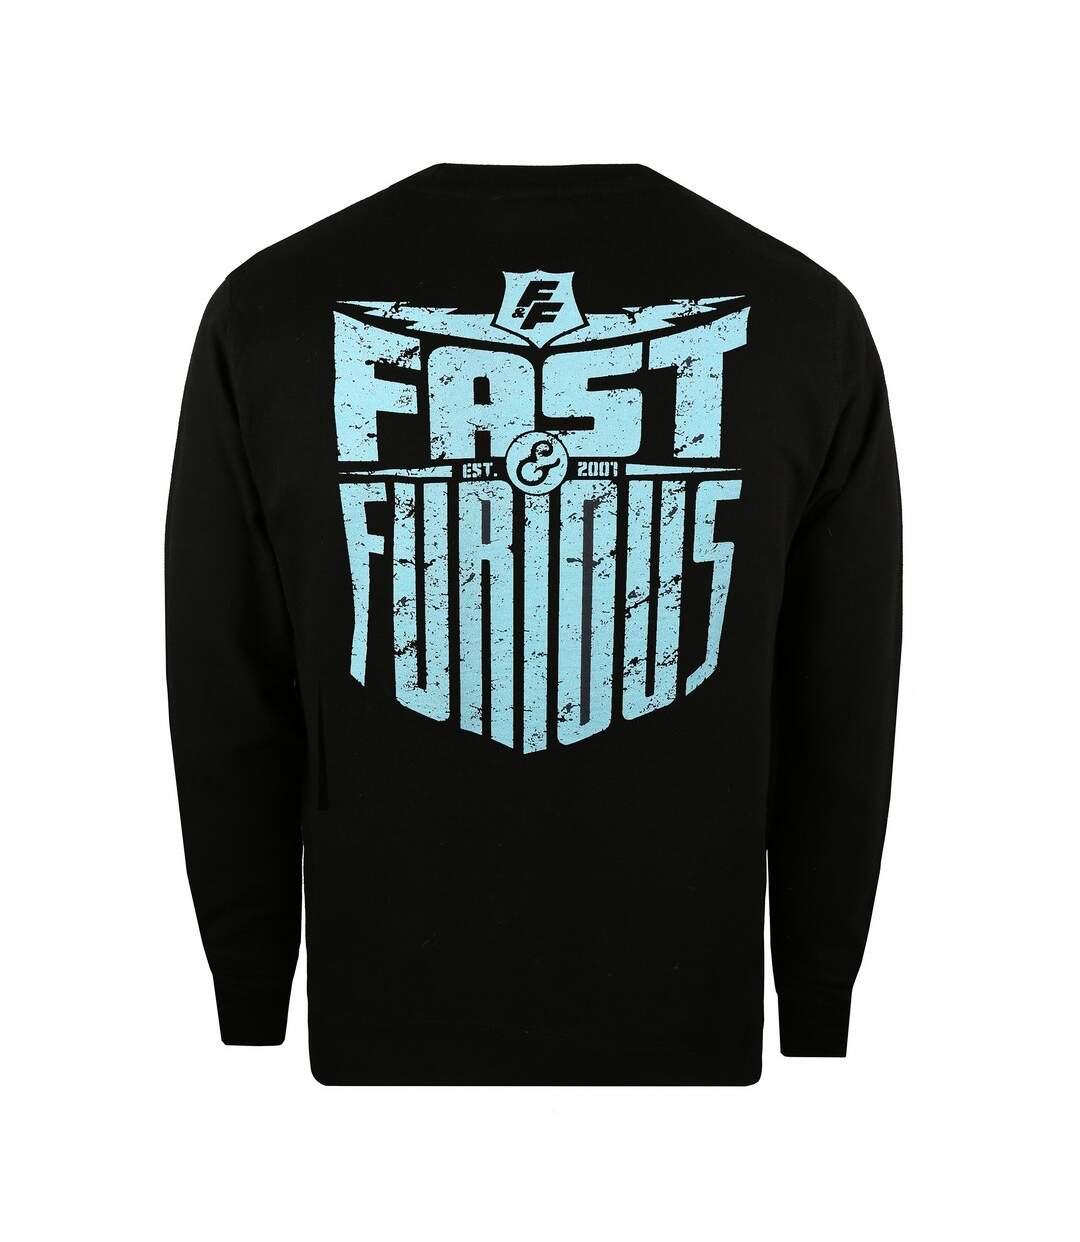 Fast & Furious - T-shirt - Homme (Noir) - UTTV527